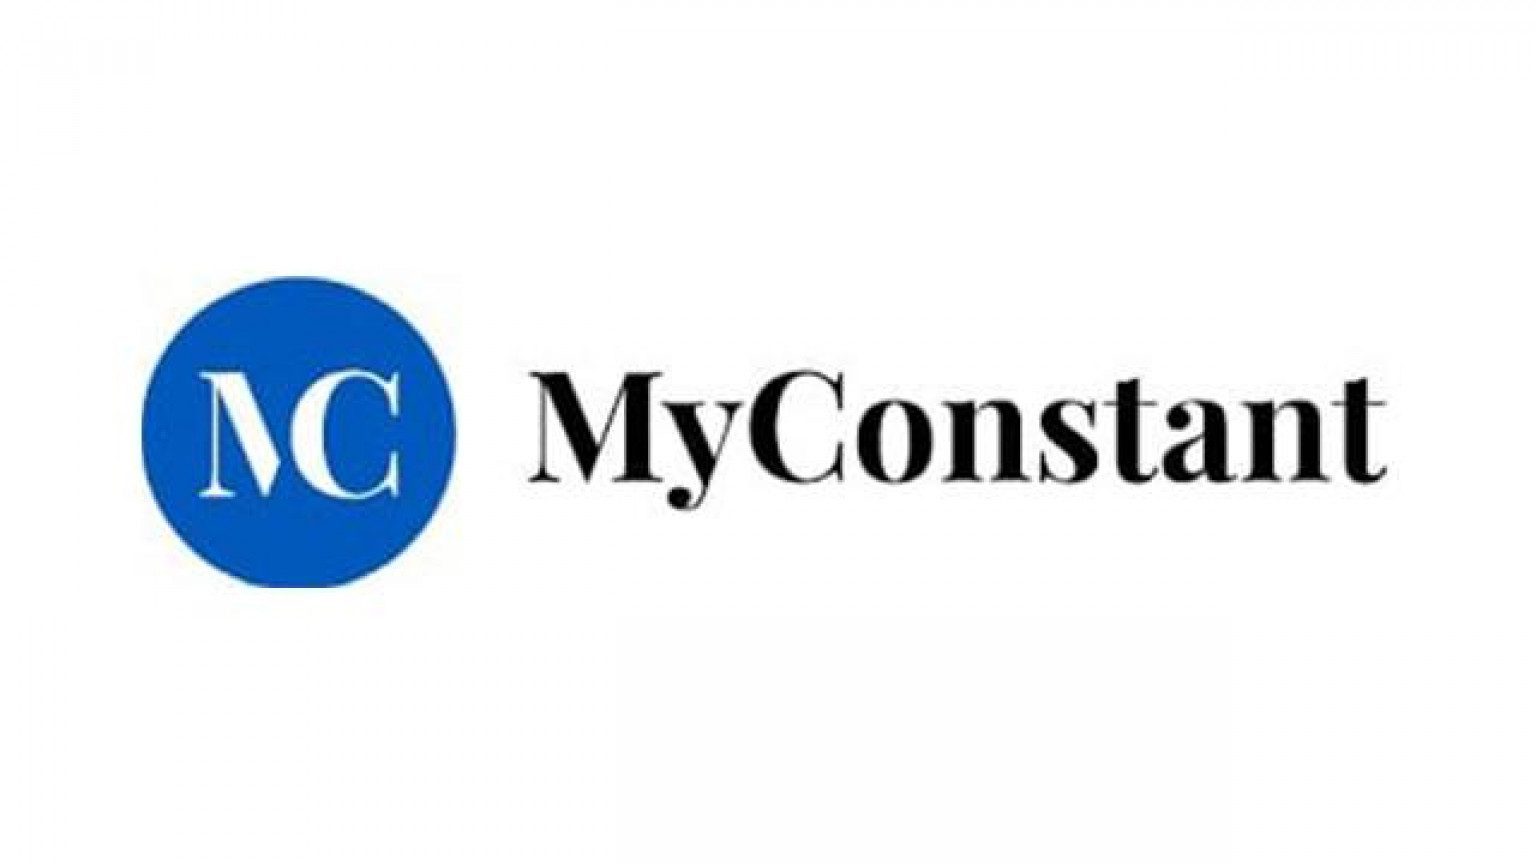 MyConstant